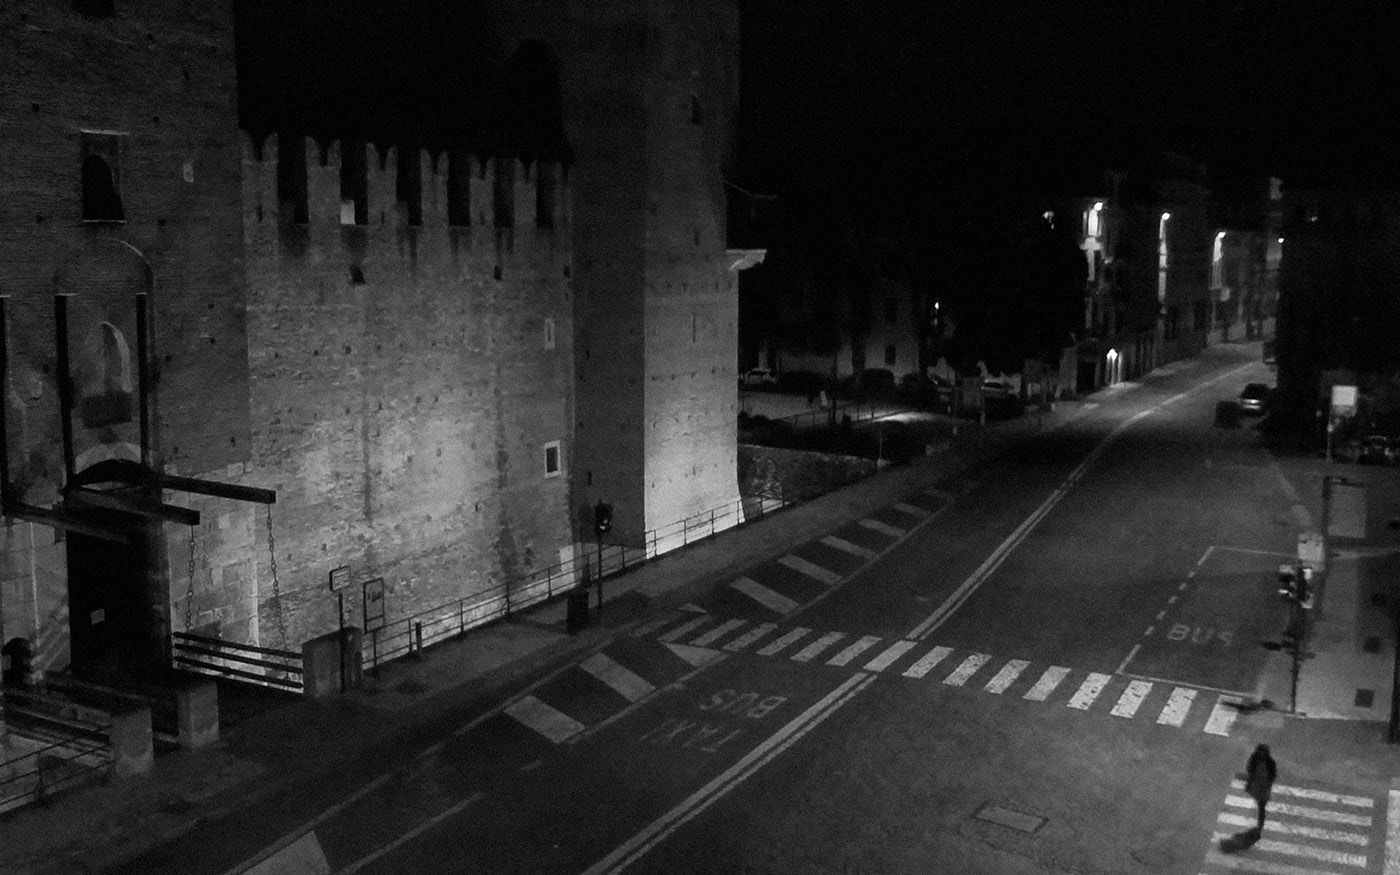 39. kép: Magányos sétáló halad a kastély falai mellett, amely a város egyik leghíresebb turisztikai látványossága. Verona.